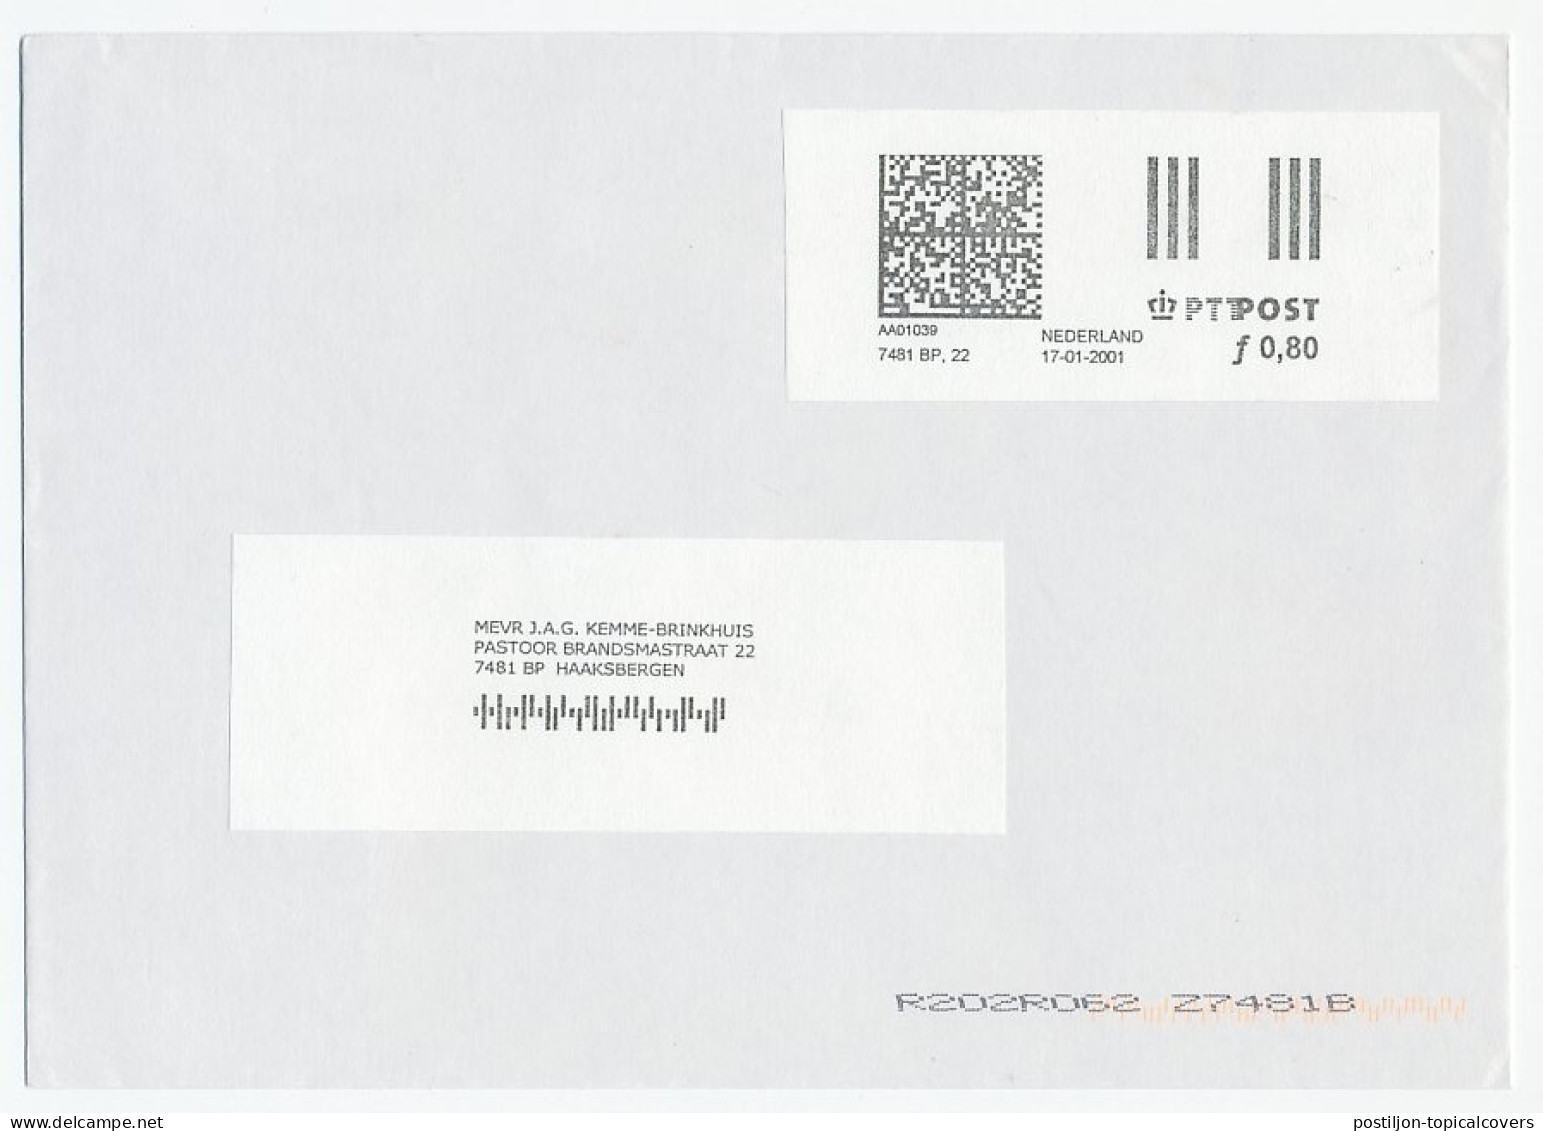 Test / Proof Digital Franking Machine Netherlands 2001  - Vignette [ATM]